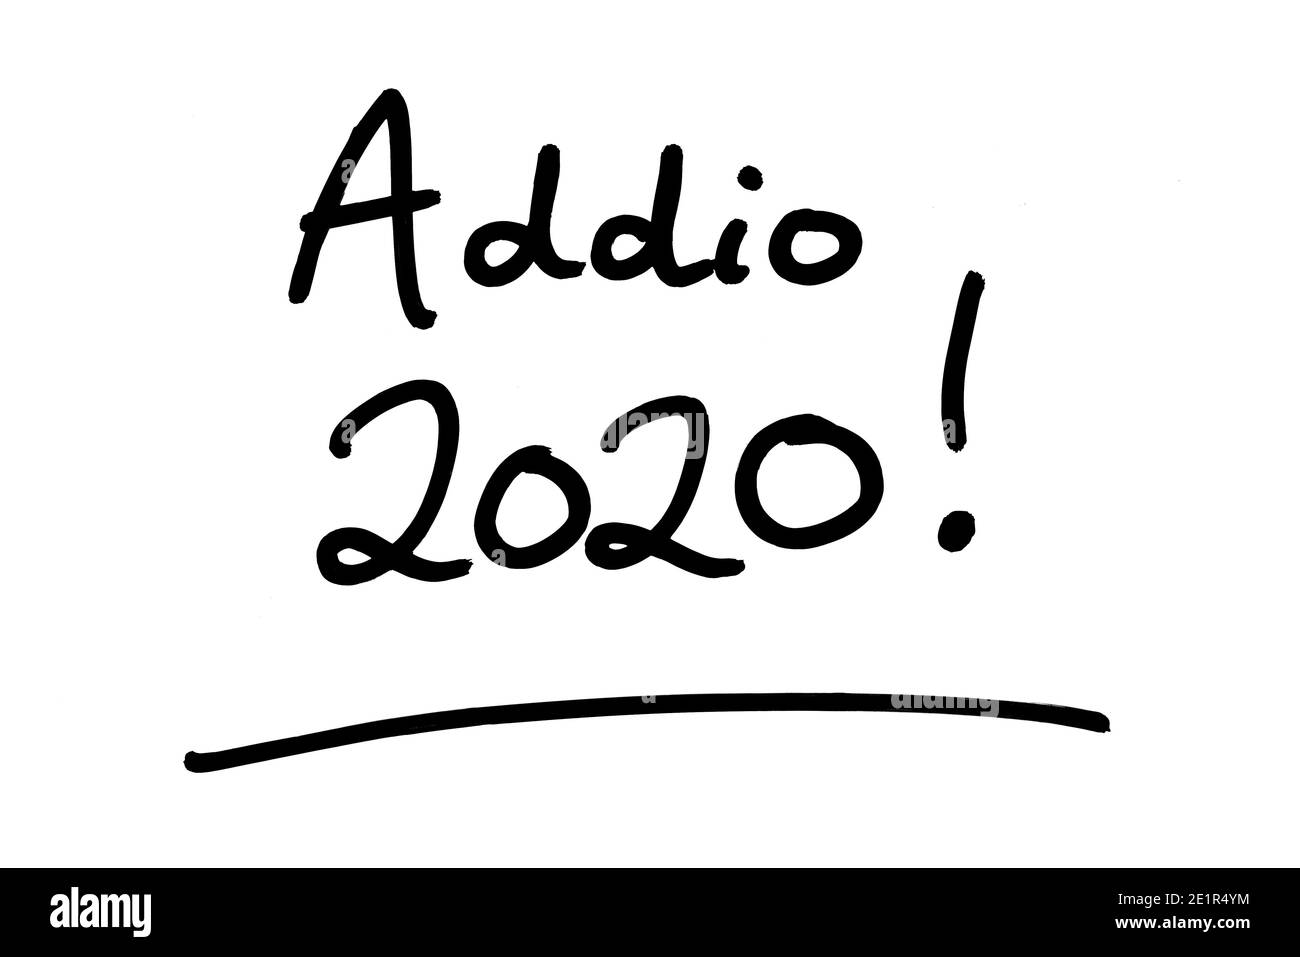 Addio 2020! - Auf Wiedersehen 2020 bedeutet! In italienischer Sprache - handgeschrieben auf weißem Hintergrund. Stockfoto